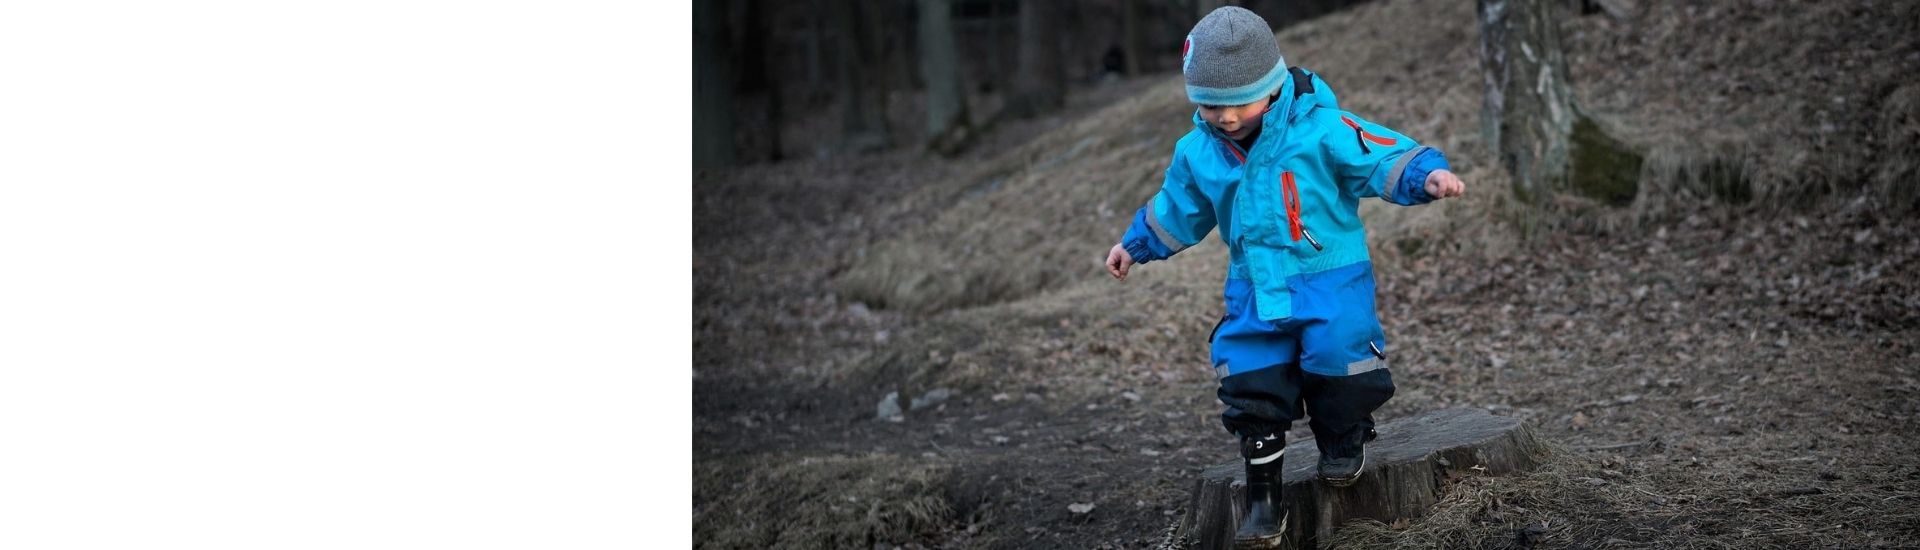 Un proyecto de una escuela de Dinamarca, parte de Escuelas por el Mundo. Se ve un niño divirtiéndose en un bosque.